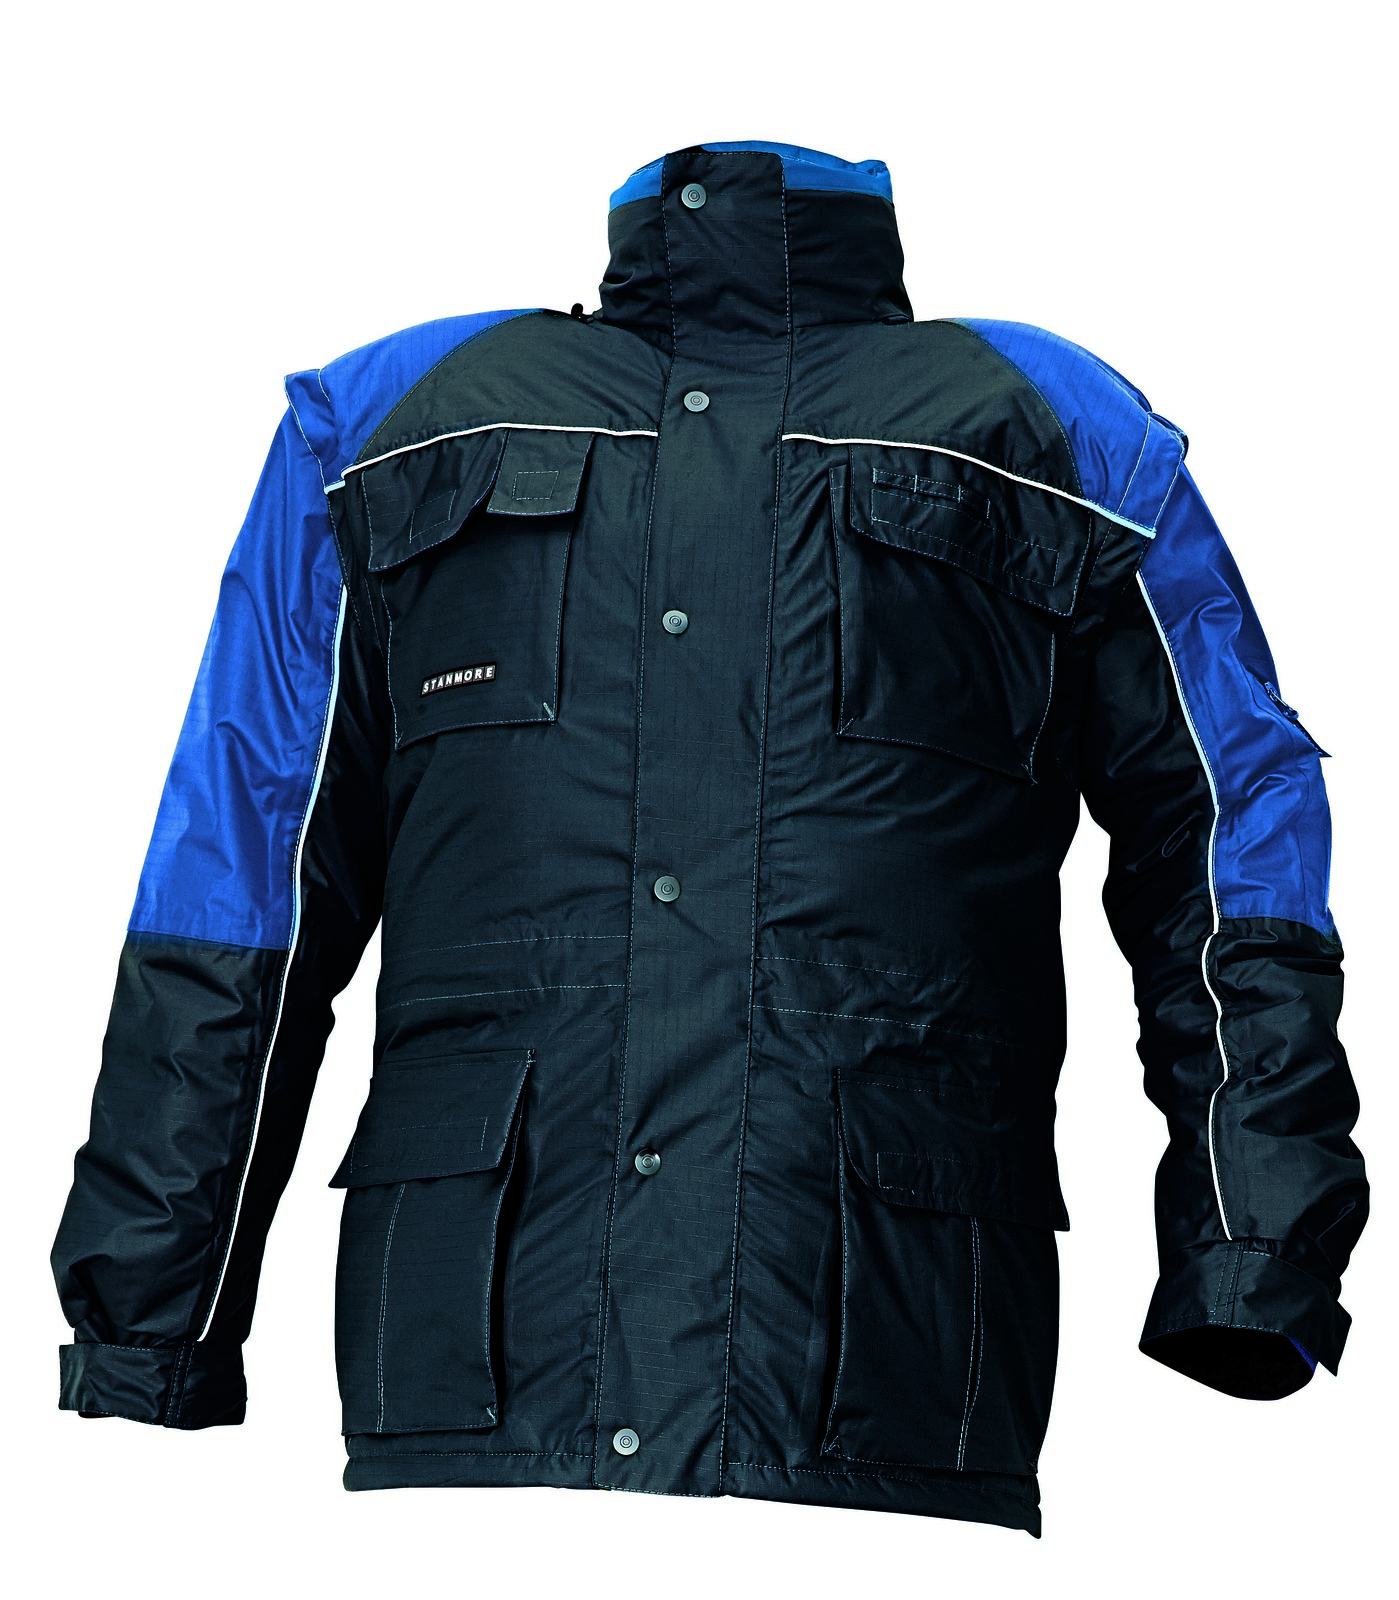 Zimná nepremokavá bunda Stanmore 3v1 pánska - veľkosť: XXL, farba: modrá